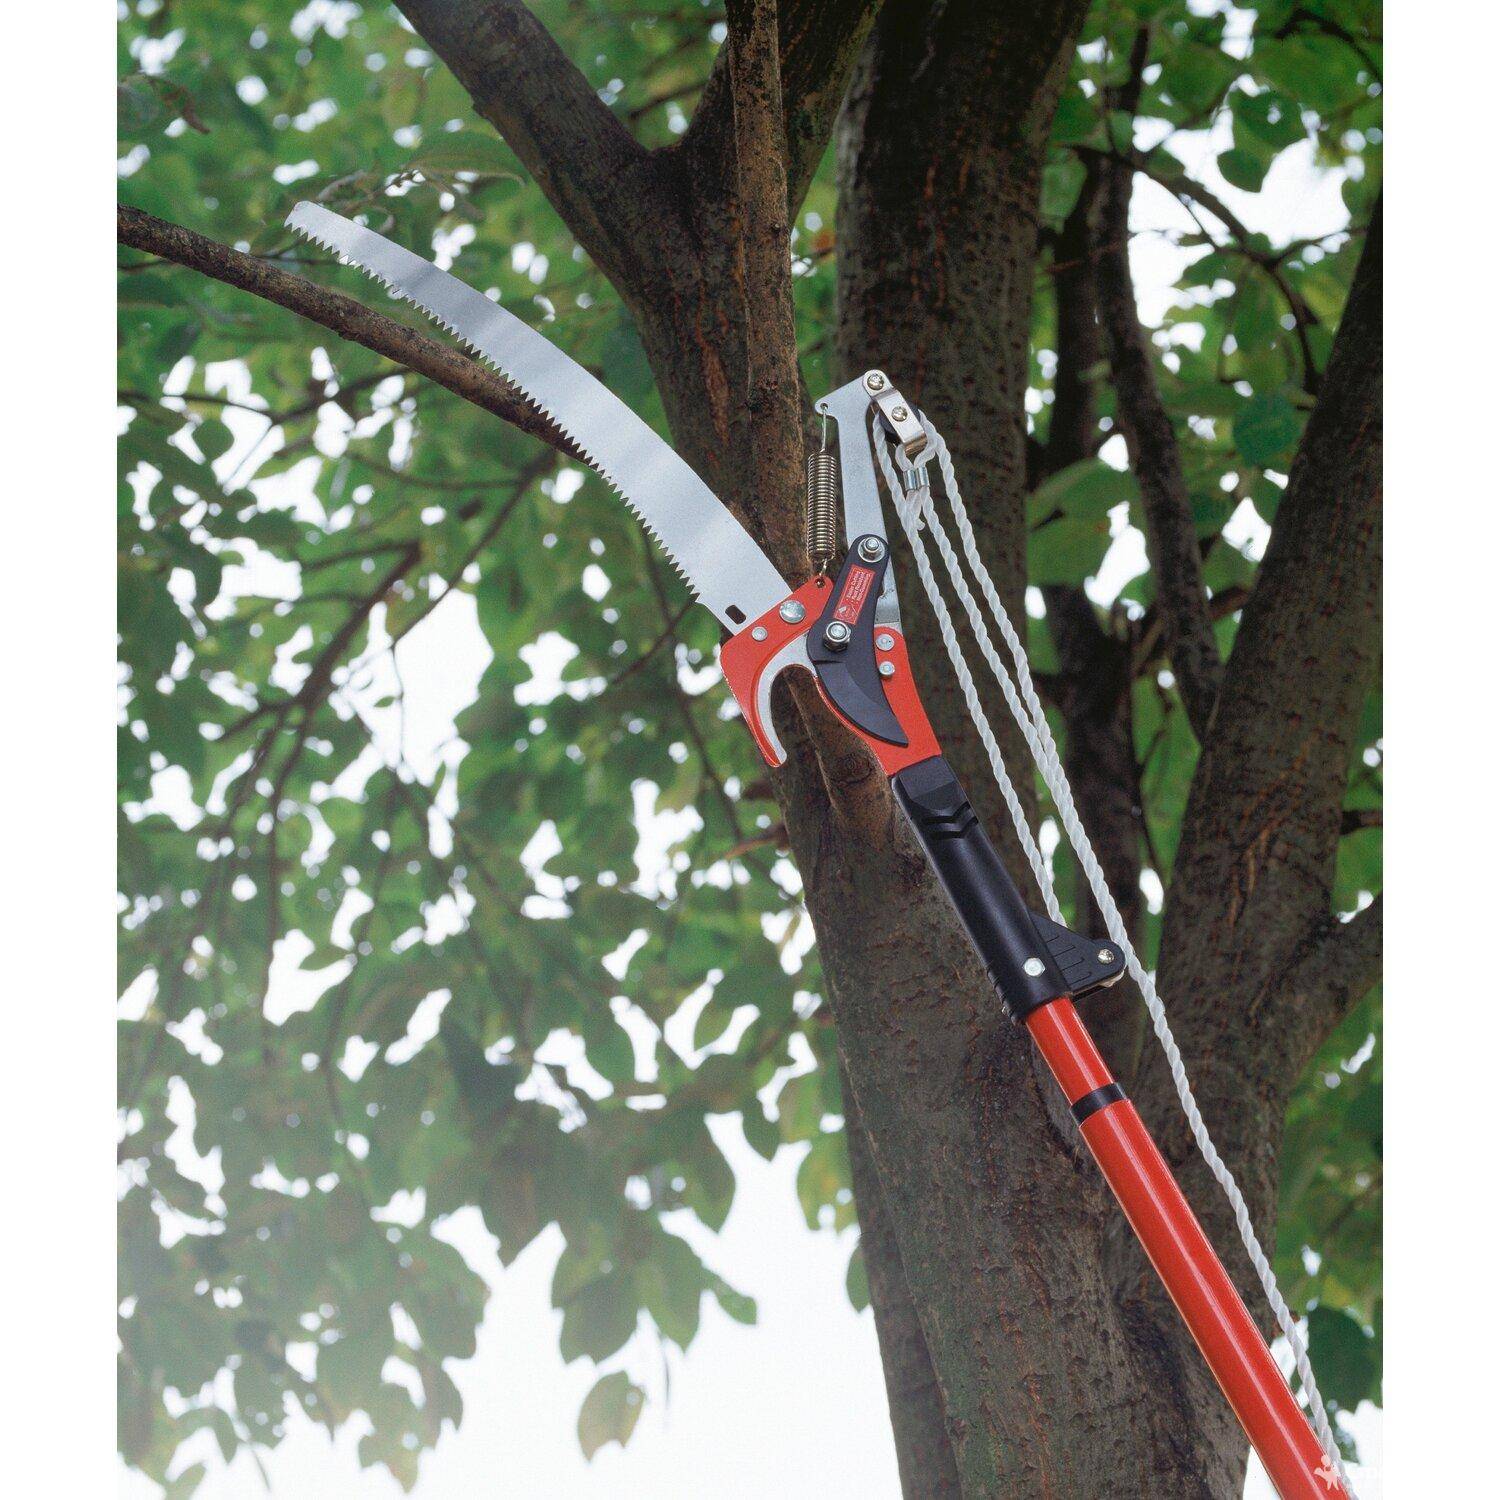 Ножовка по дереву: какая лучше, фото и применение | строительство. деревянные и др. материалы